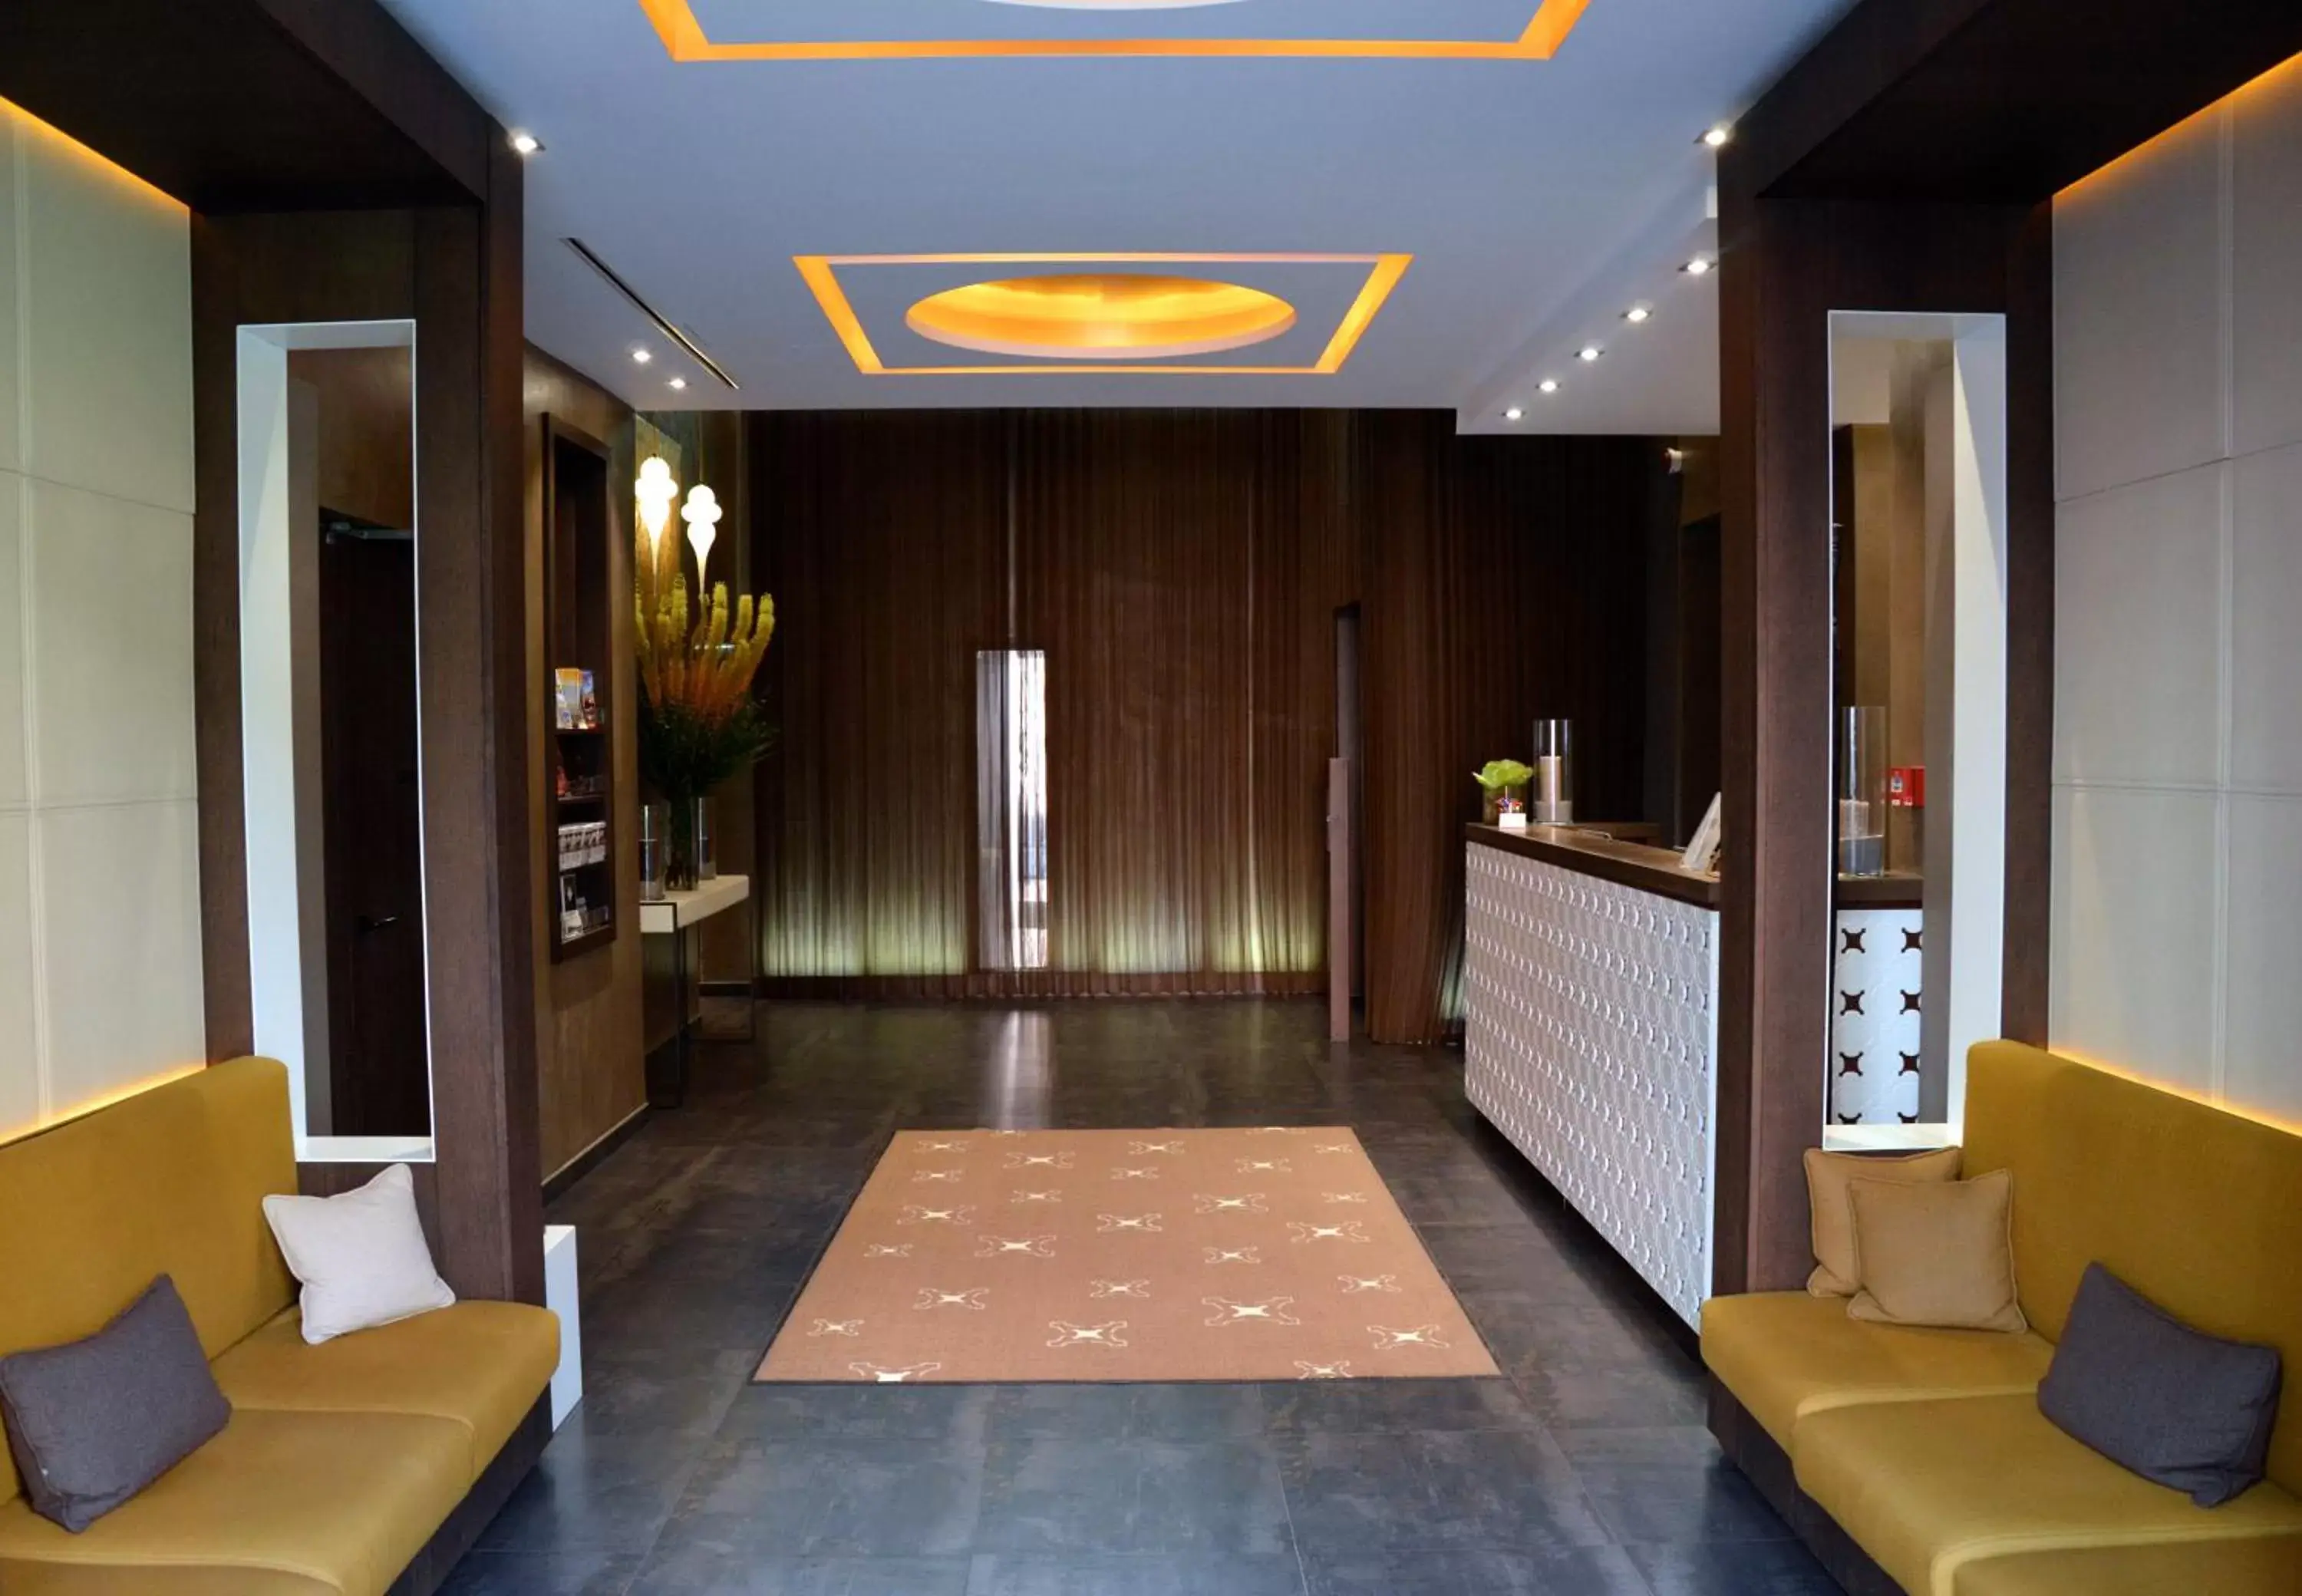 Lobby or reception, Lobby/Reception in Hotel Villa Saxe Eiffel